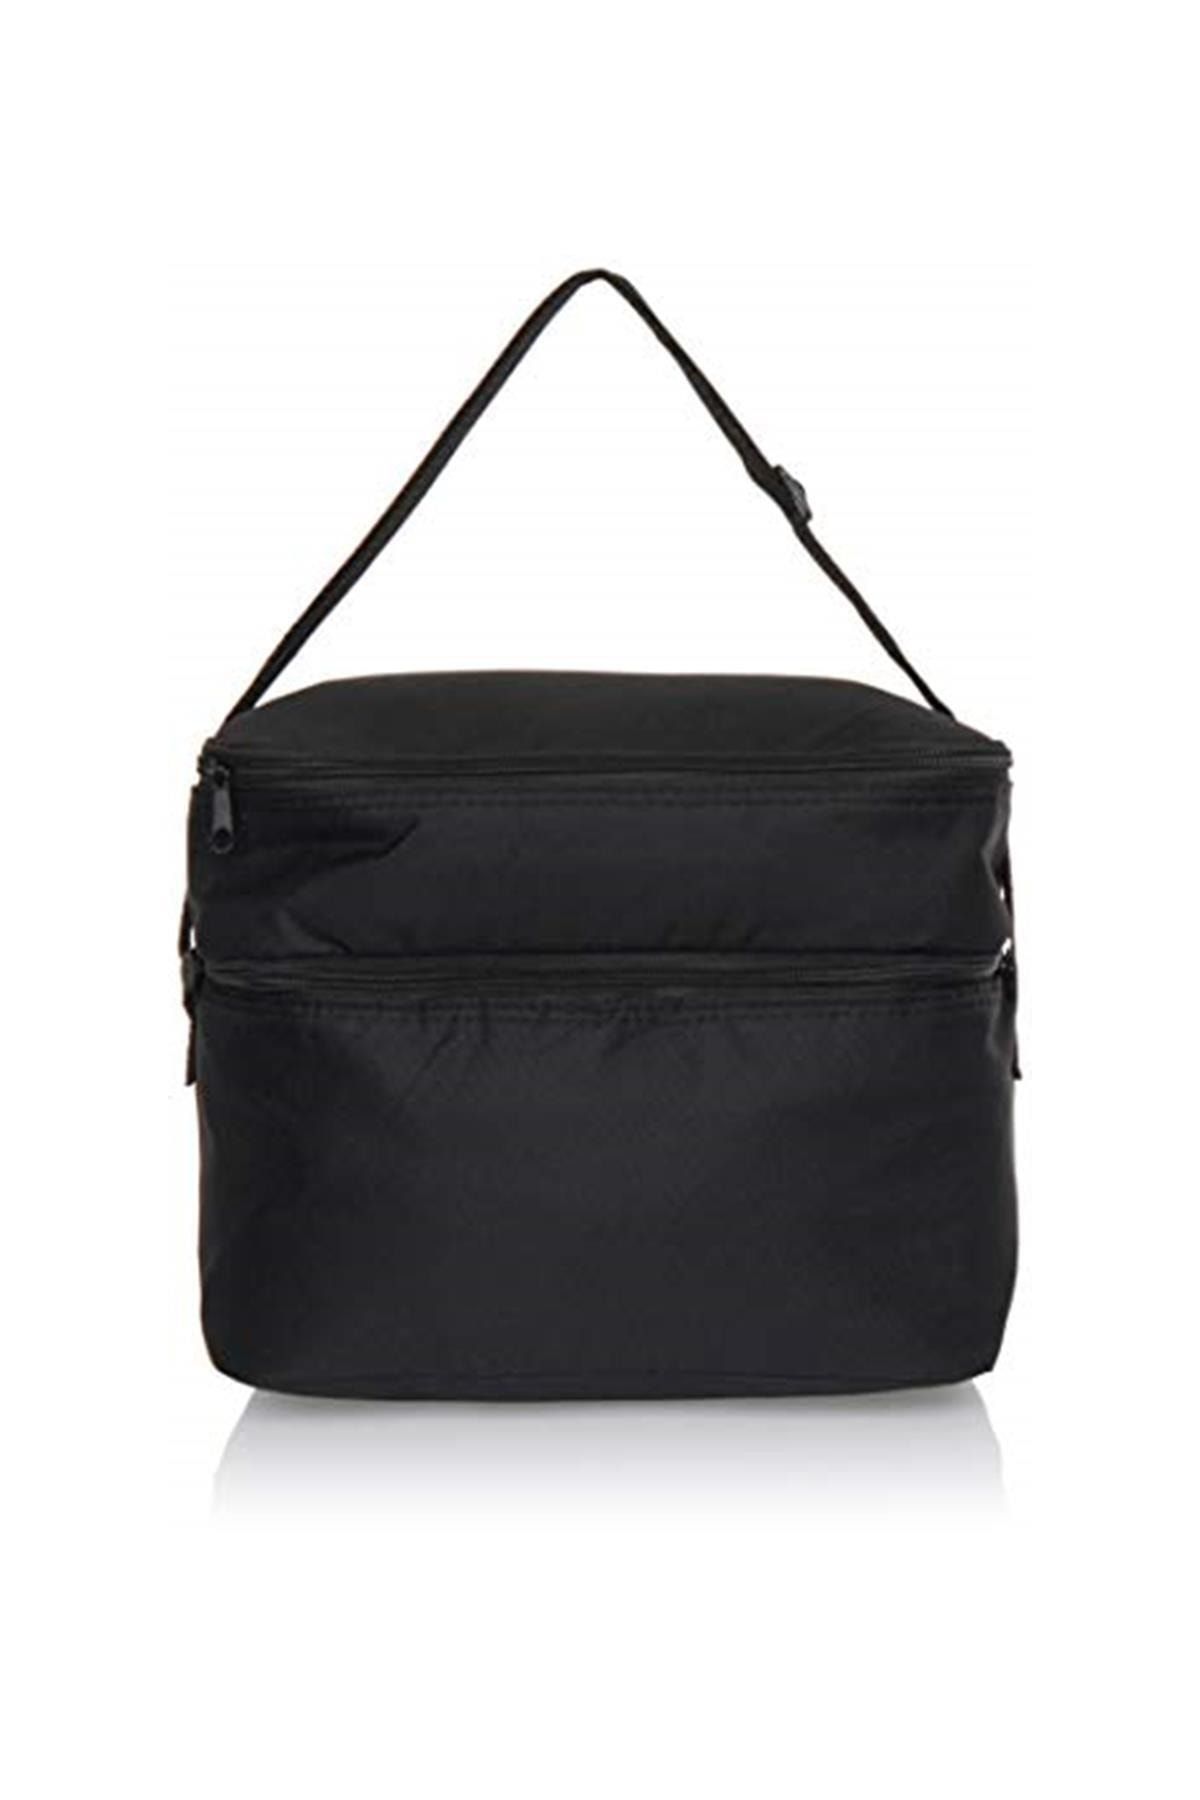 Midocean Soğutucu Çanta Soğutucu Çanta Cooler Bag Unisex, Siyah, Tek Boy